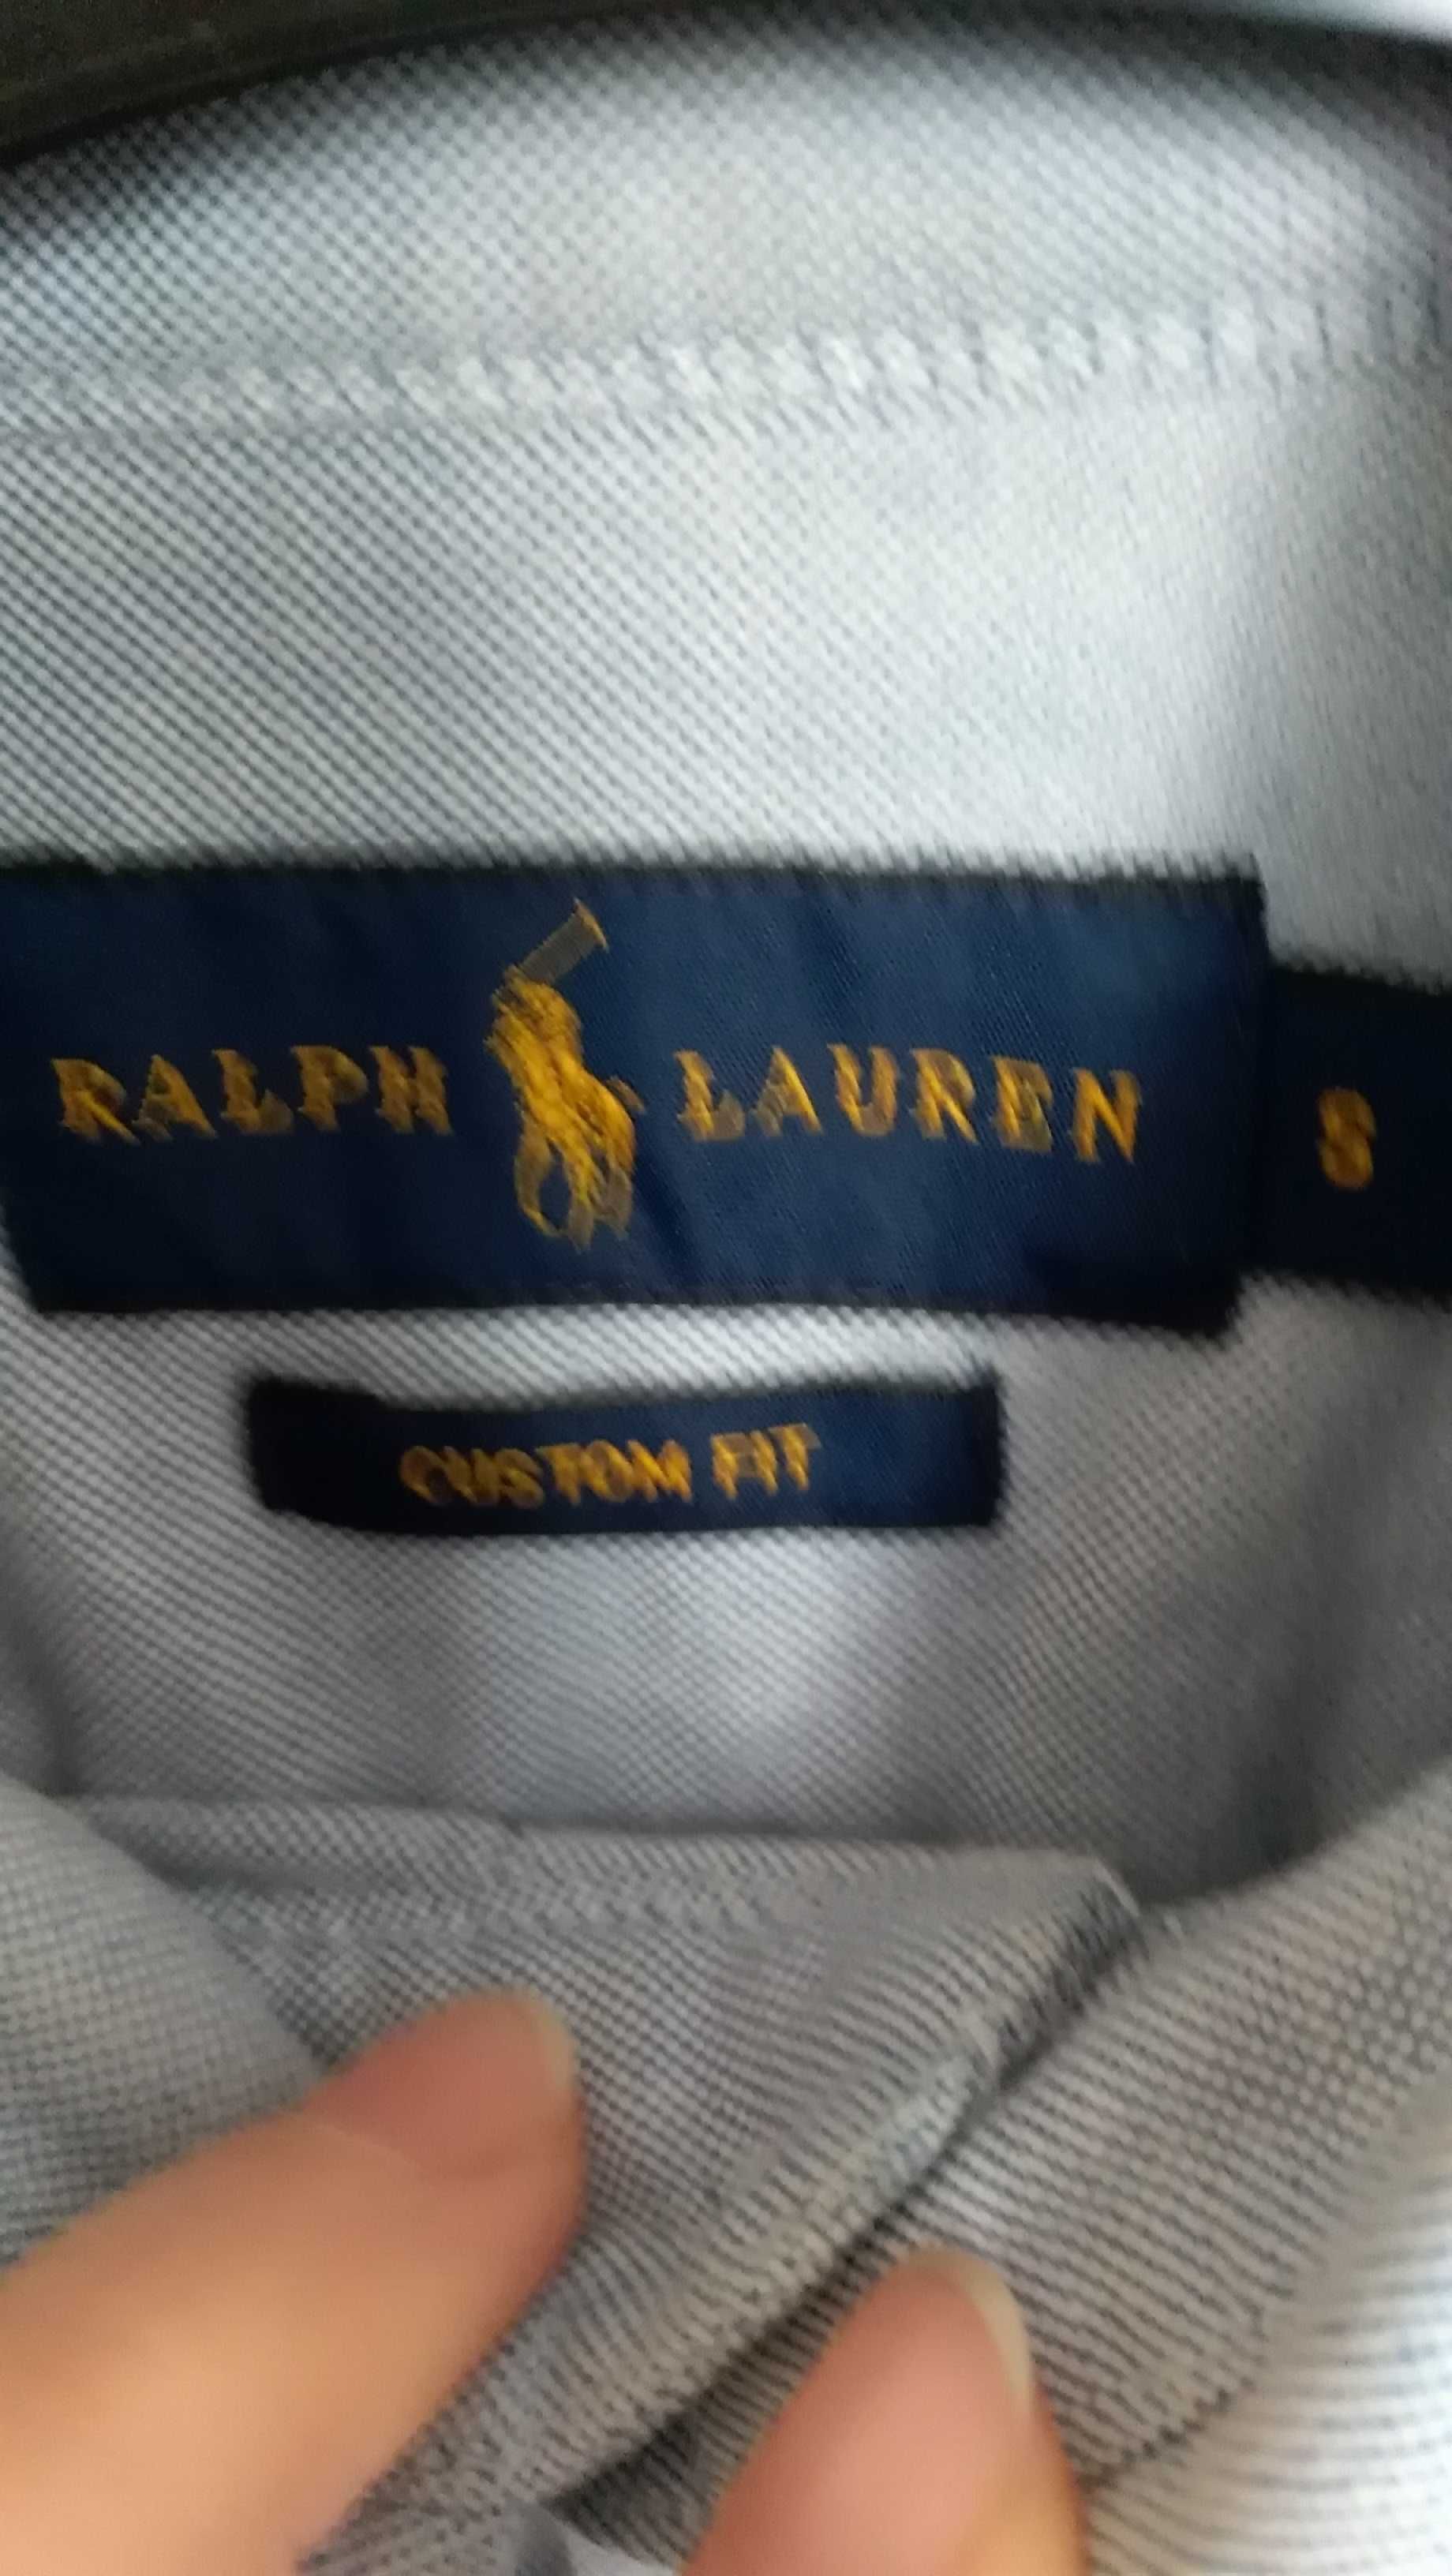 Camasa Ralph Lauren, originala, s/36, albastru deschis